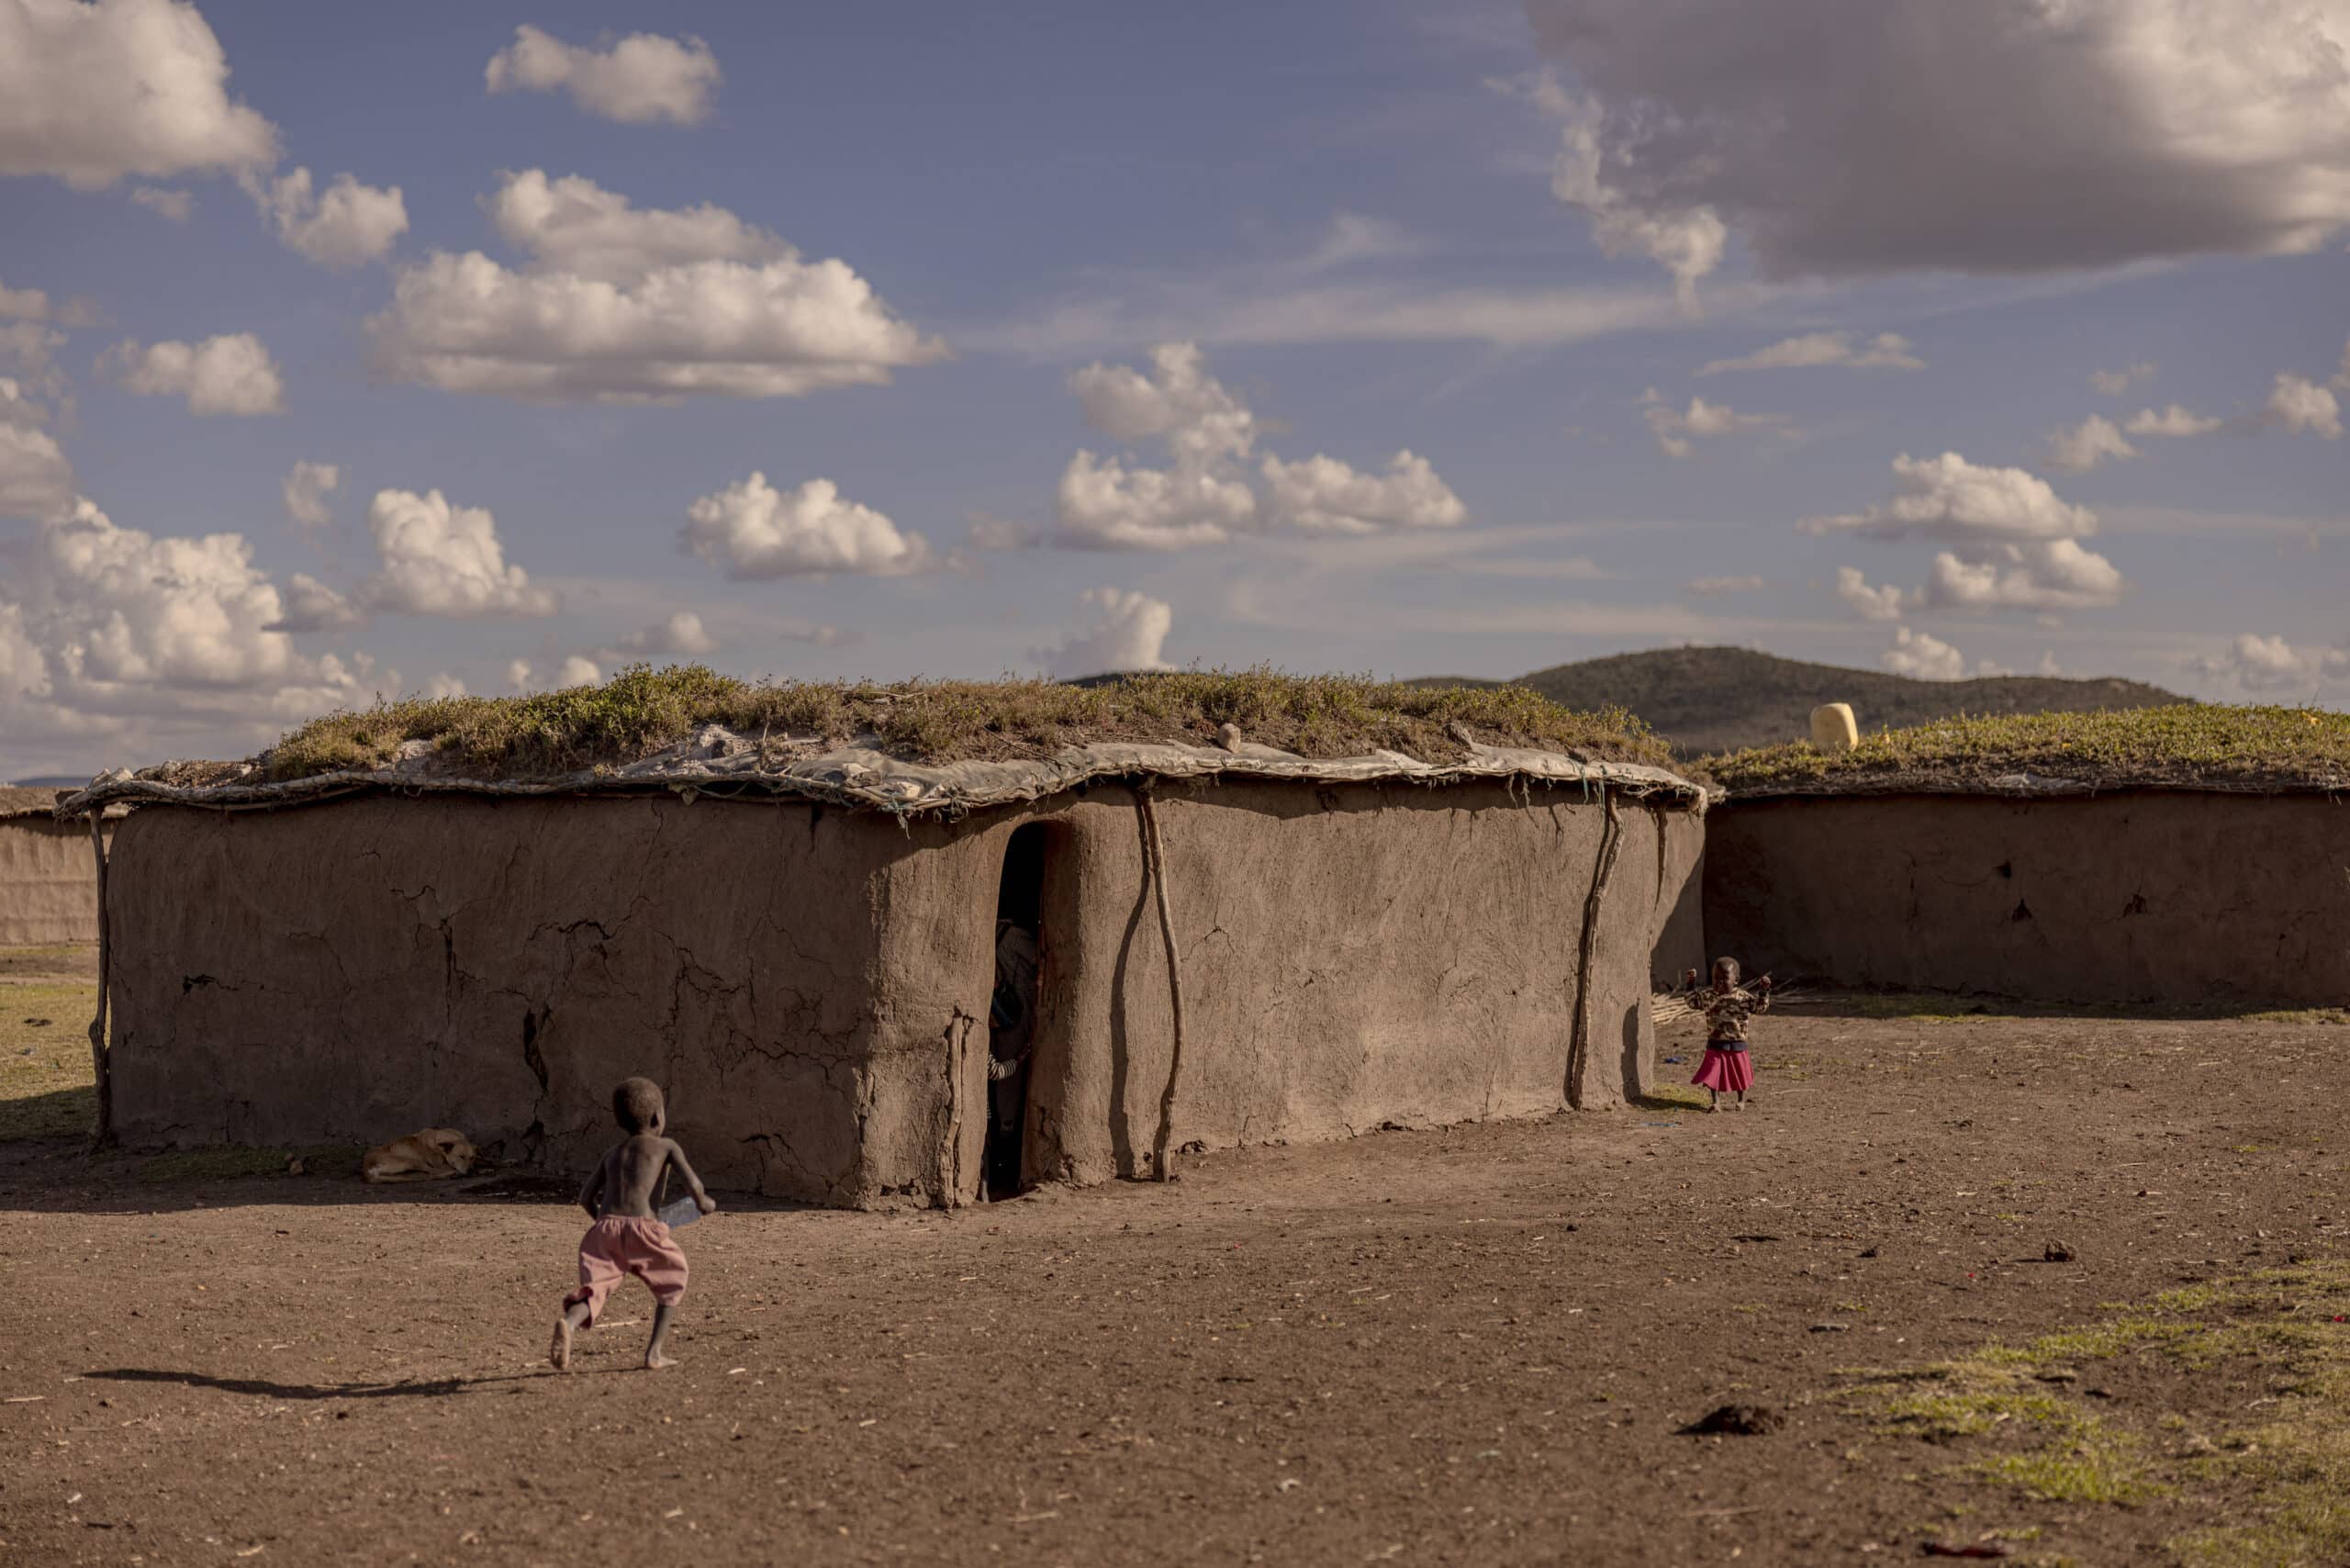 Zwei Kinder spielen neben traditionellen Lehmhütten mit Strohdächern in einer ländlichen Umgebung mit sanften Hügeln und einem bewölkten Himmel im Hintergrund. © Fotografie Tomas Rodriguez